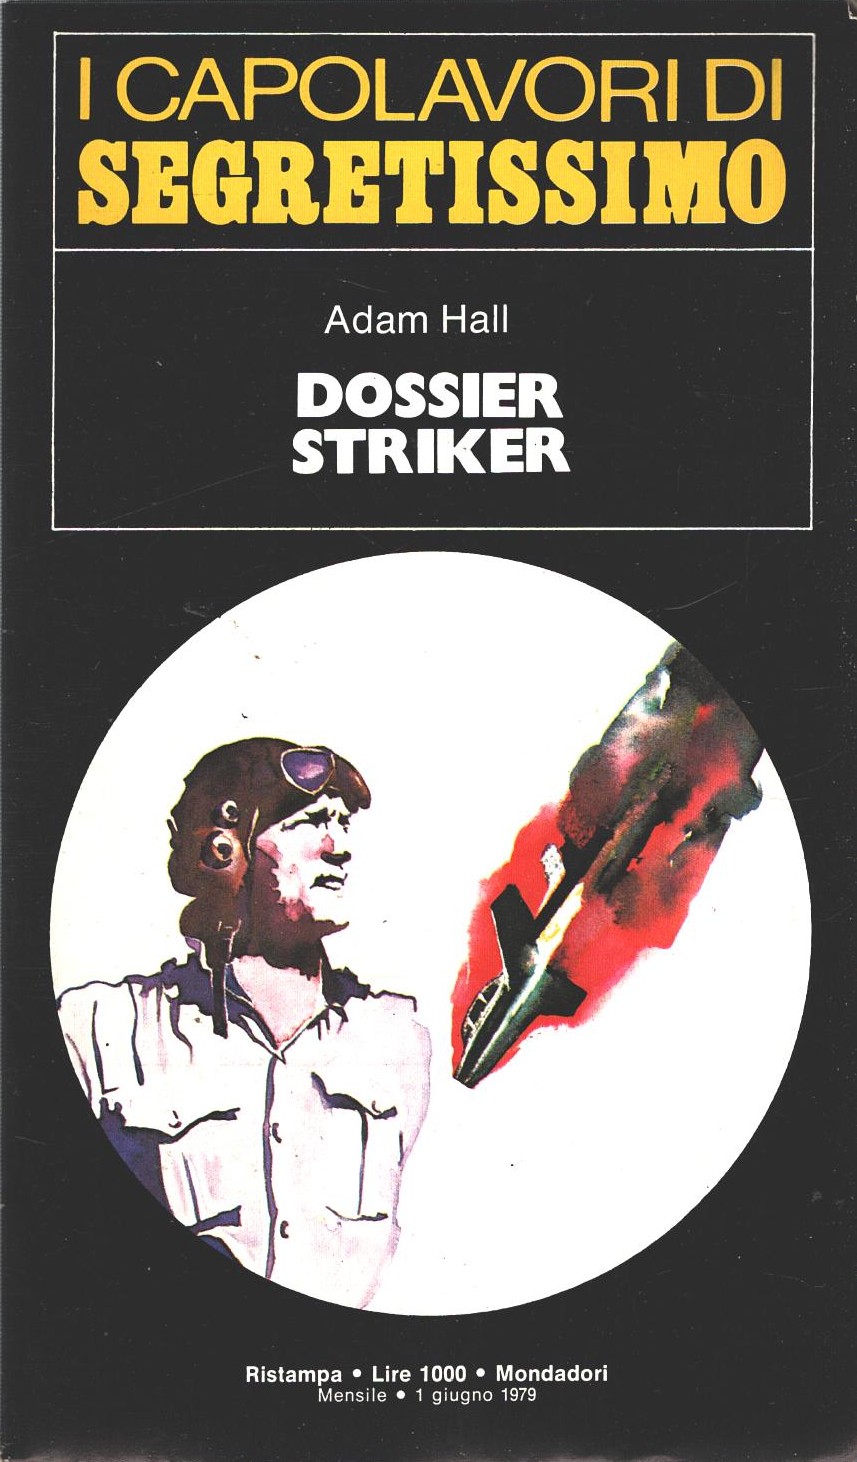 Dossier Striker di Adam Hall - Segretissimo n. 57 (I Capolavori) ed. Mondadori